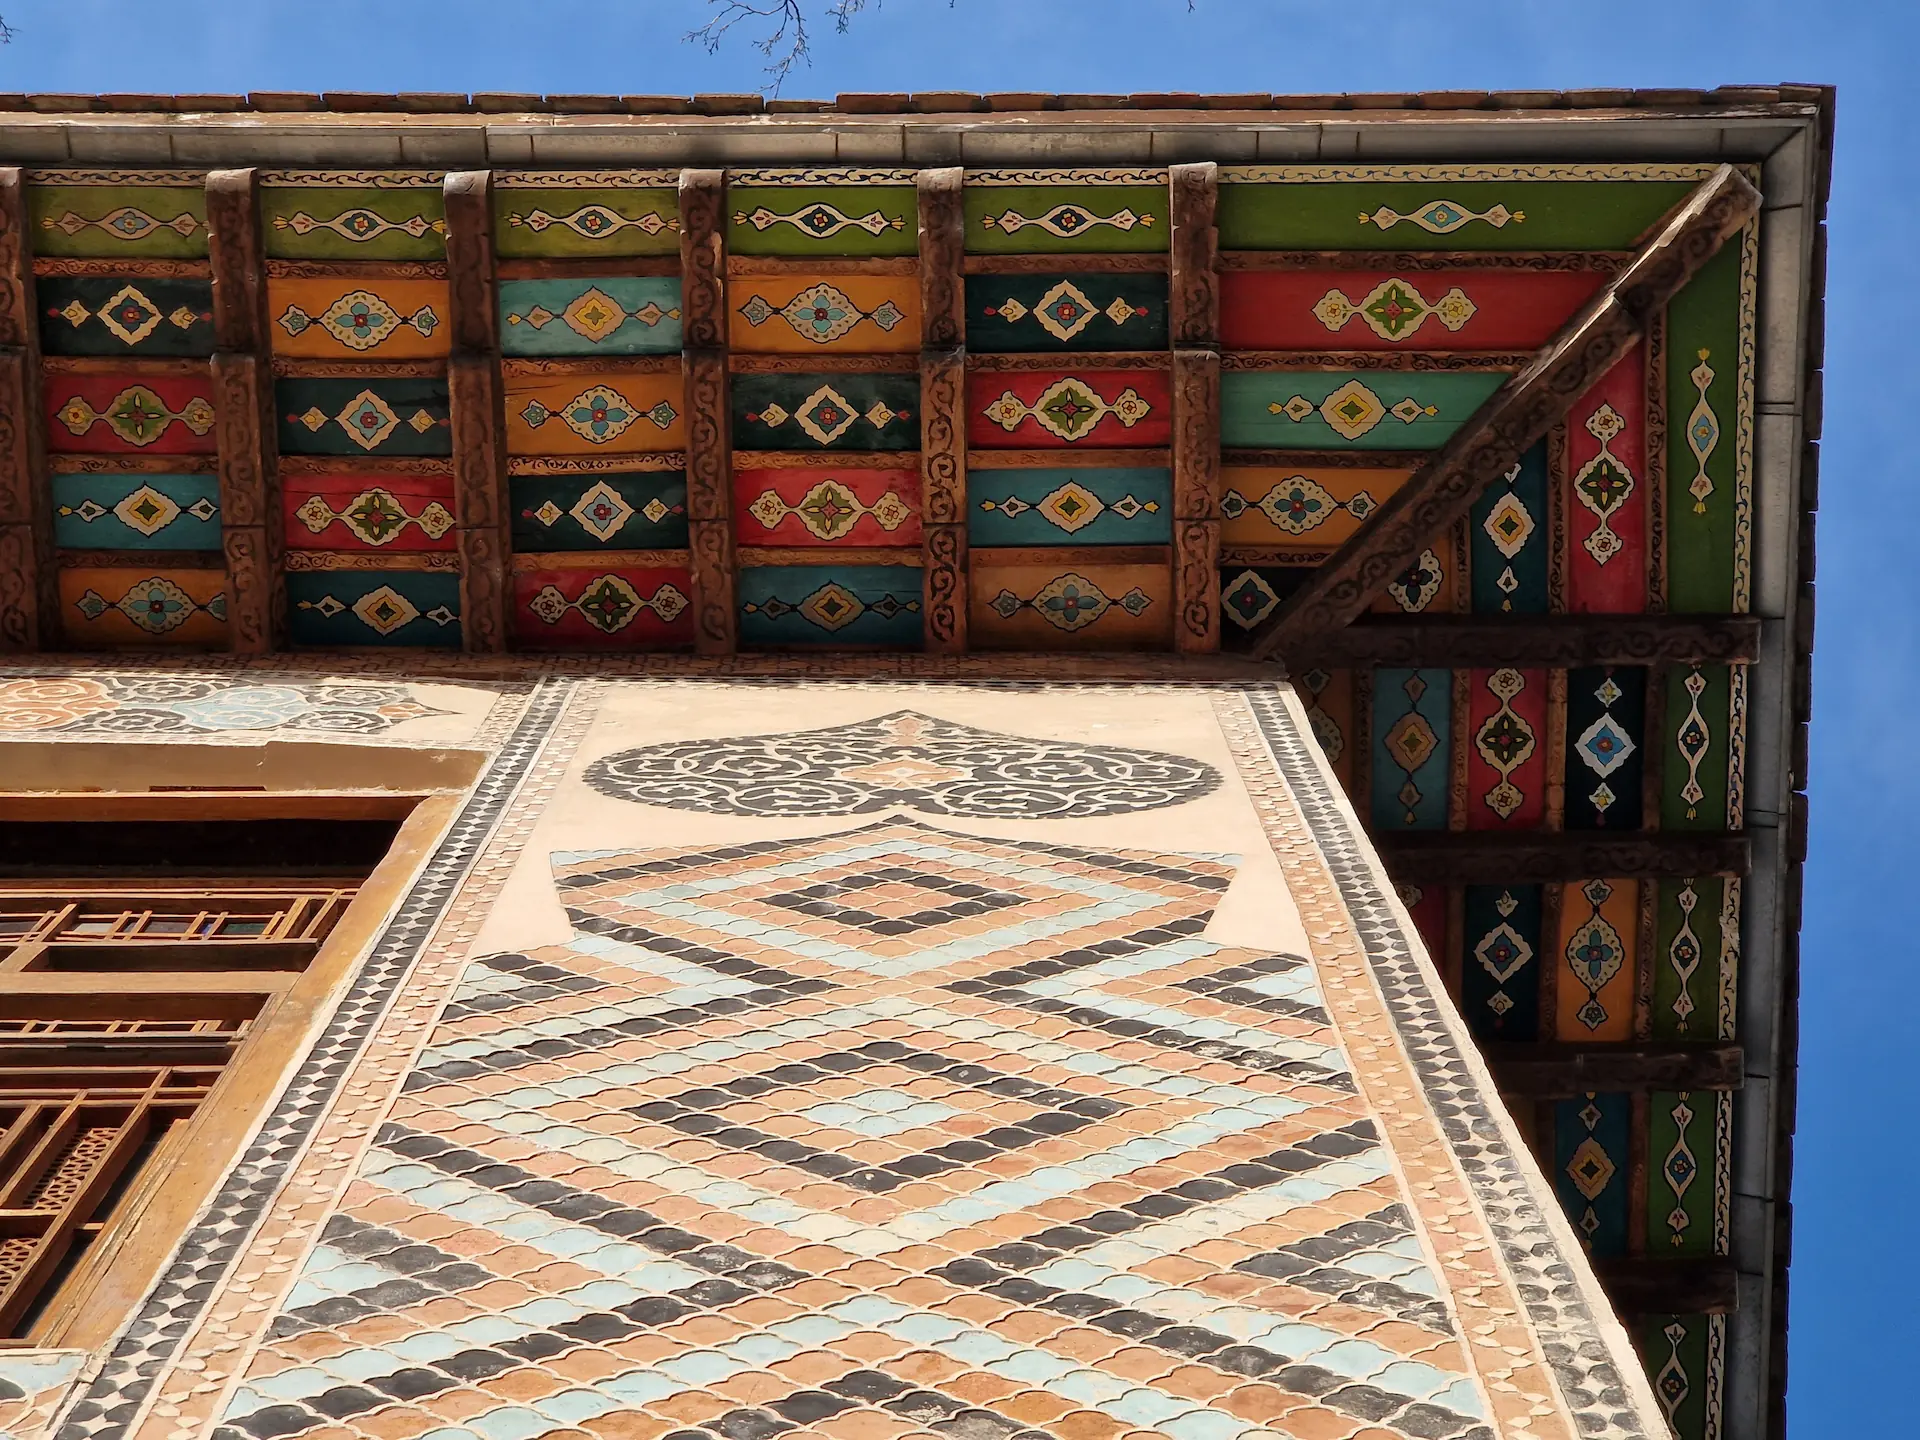 Le dessous du toit est décoré de formes et de couleurs.